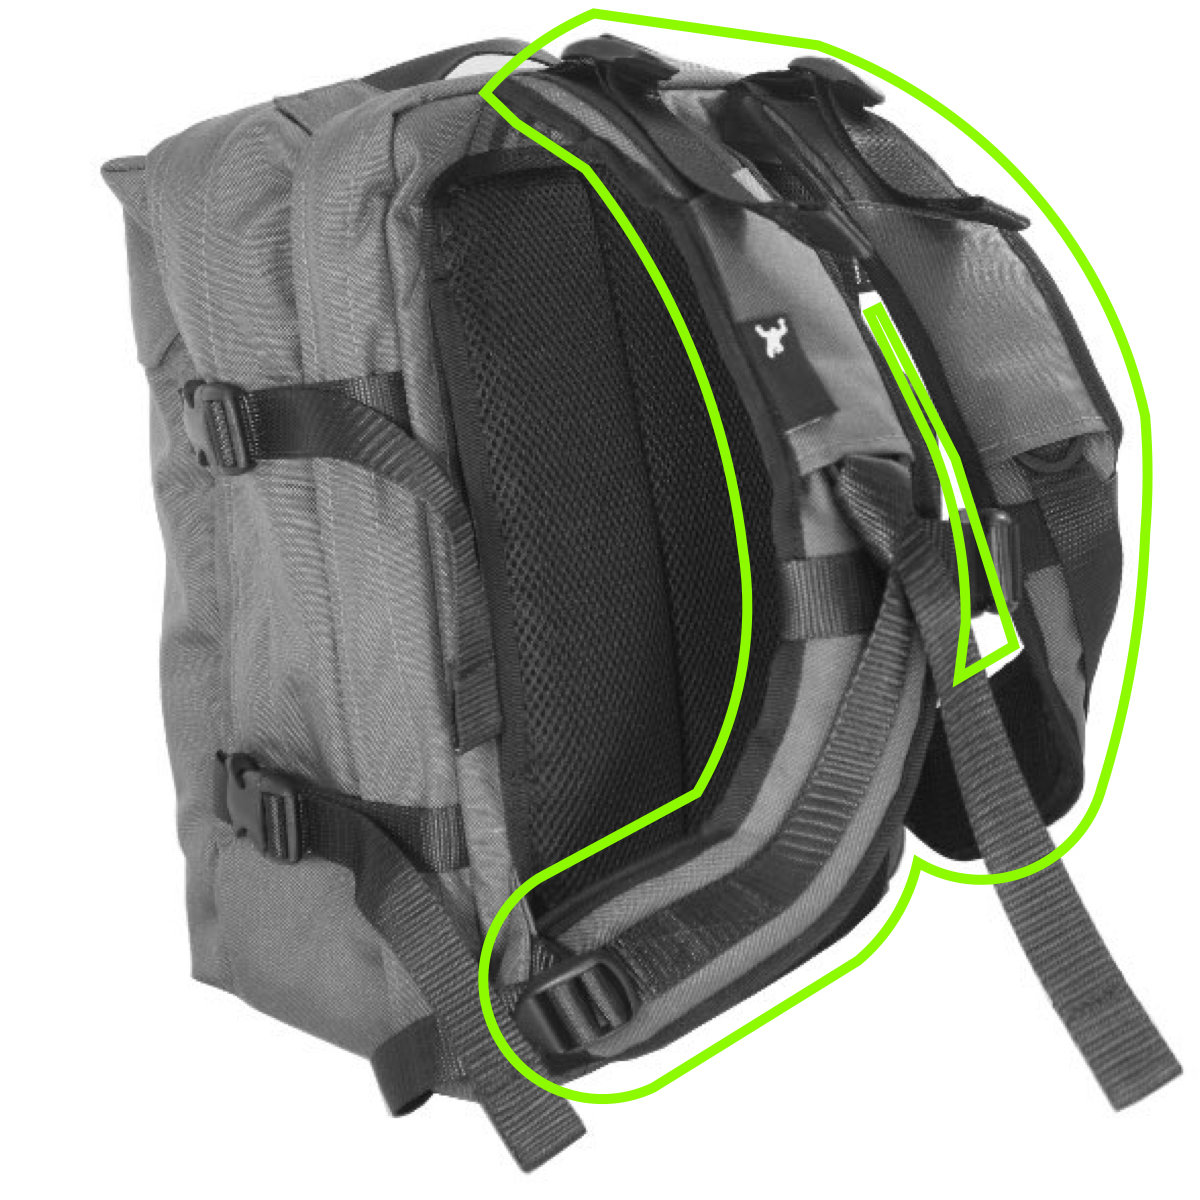 Backpack shoulder strap repair